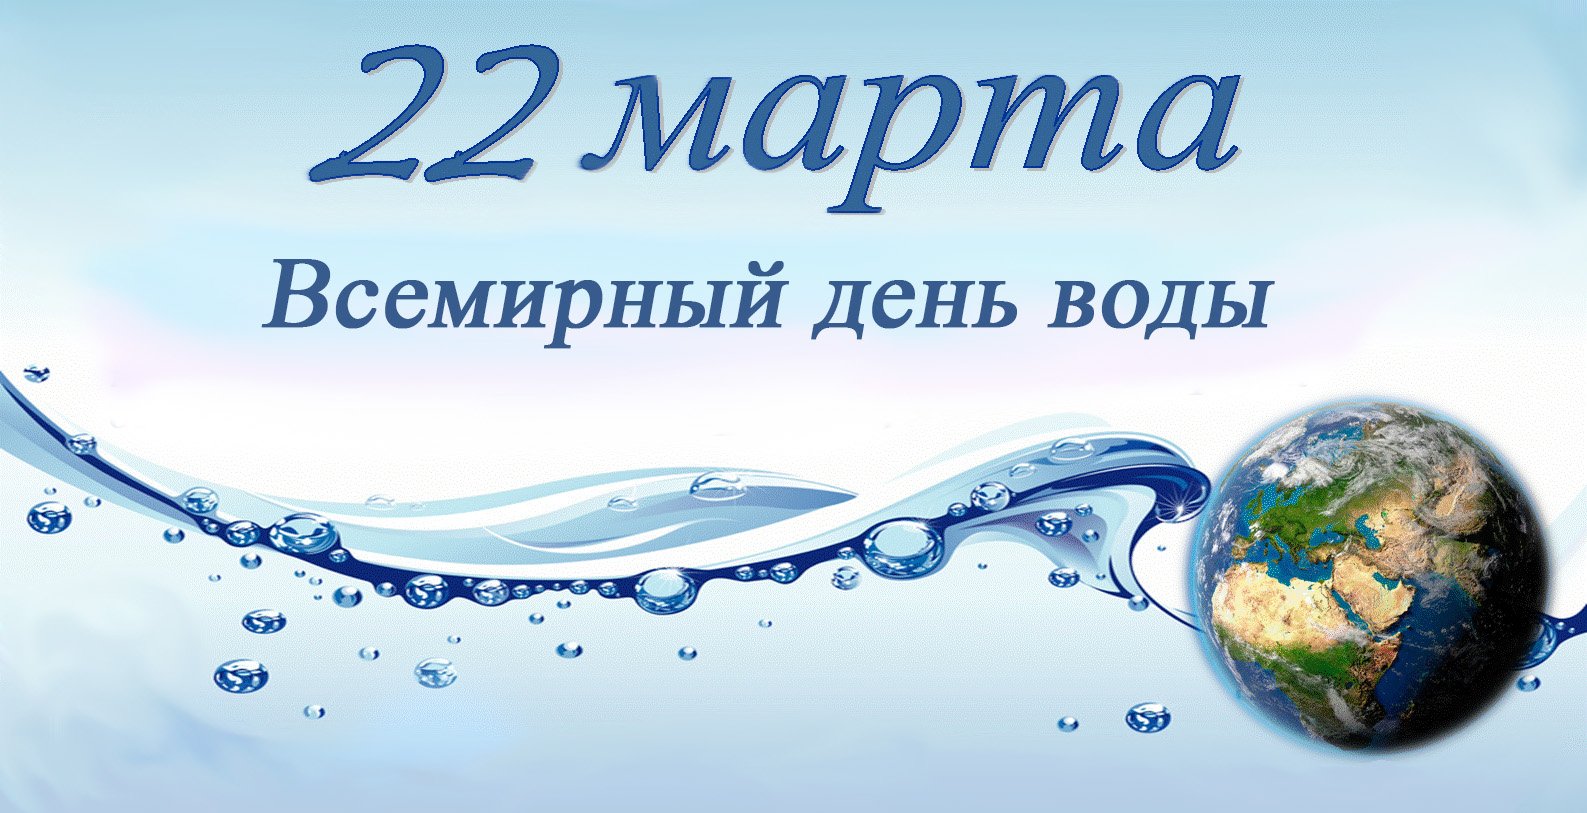 Беседа всемирный день воды. Всемирный день воды. День водных ресурсов. Всемирный день водных ресурсов.